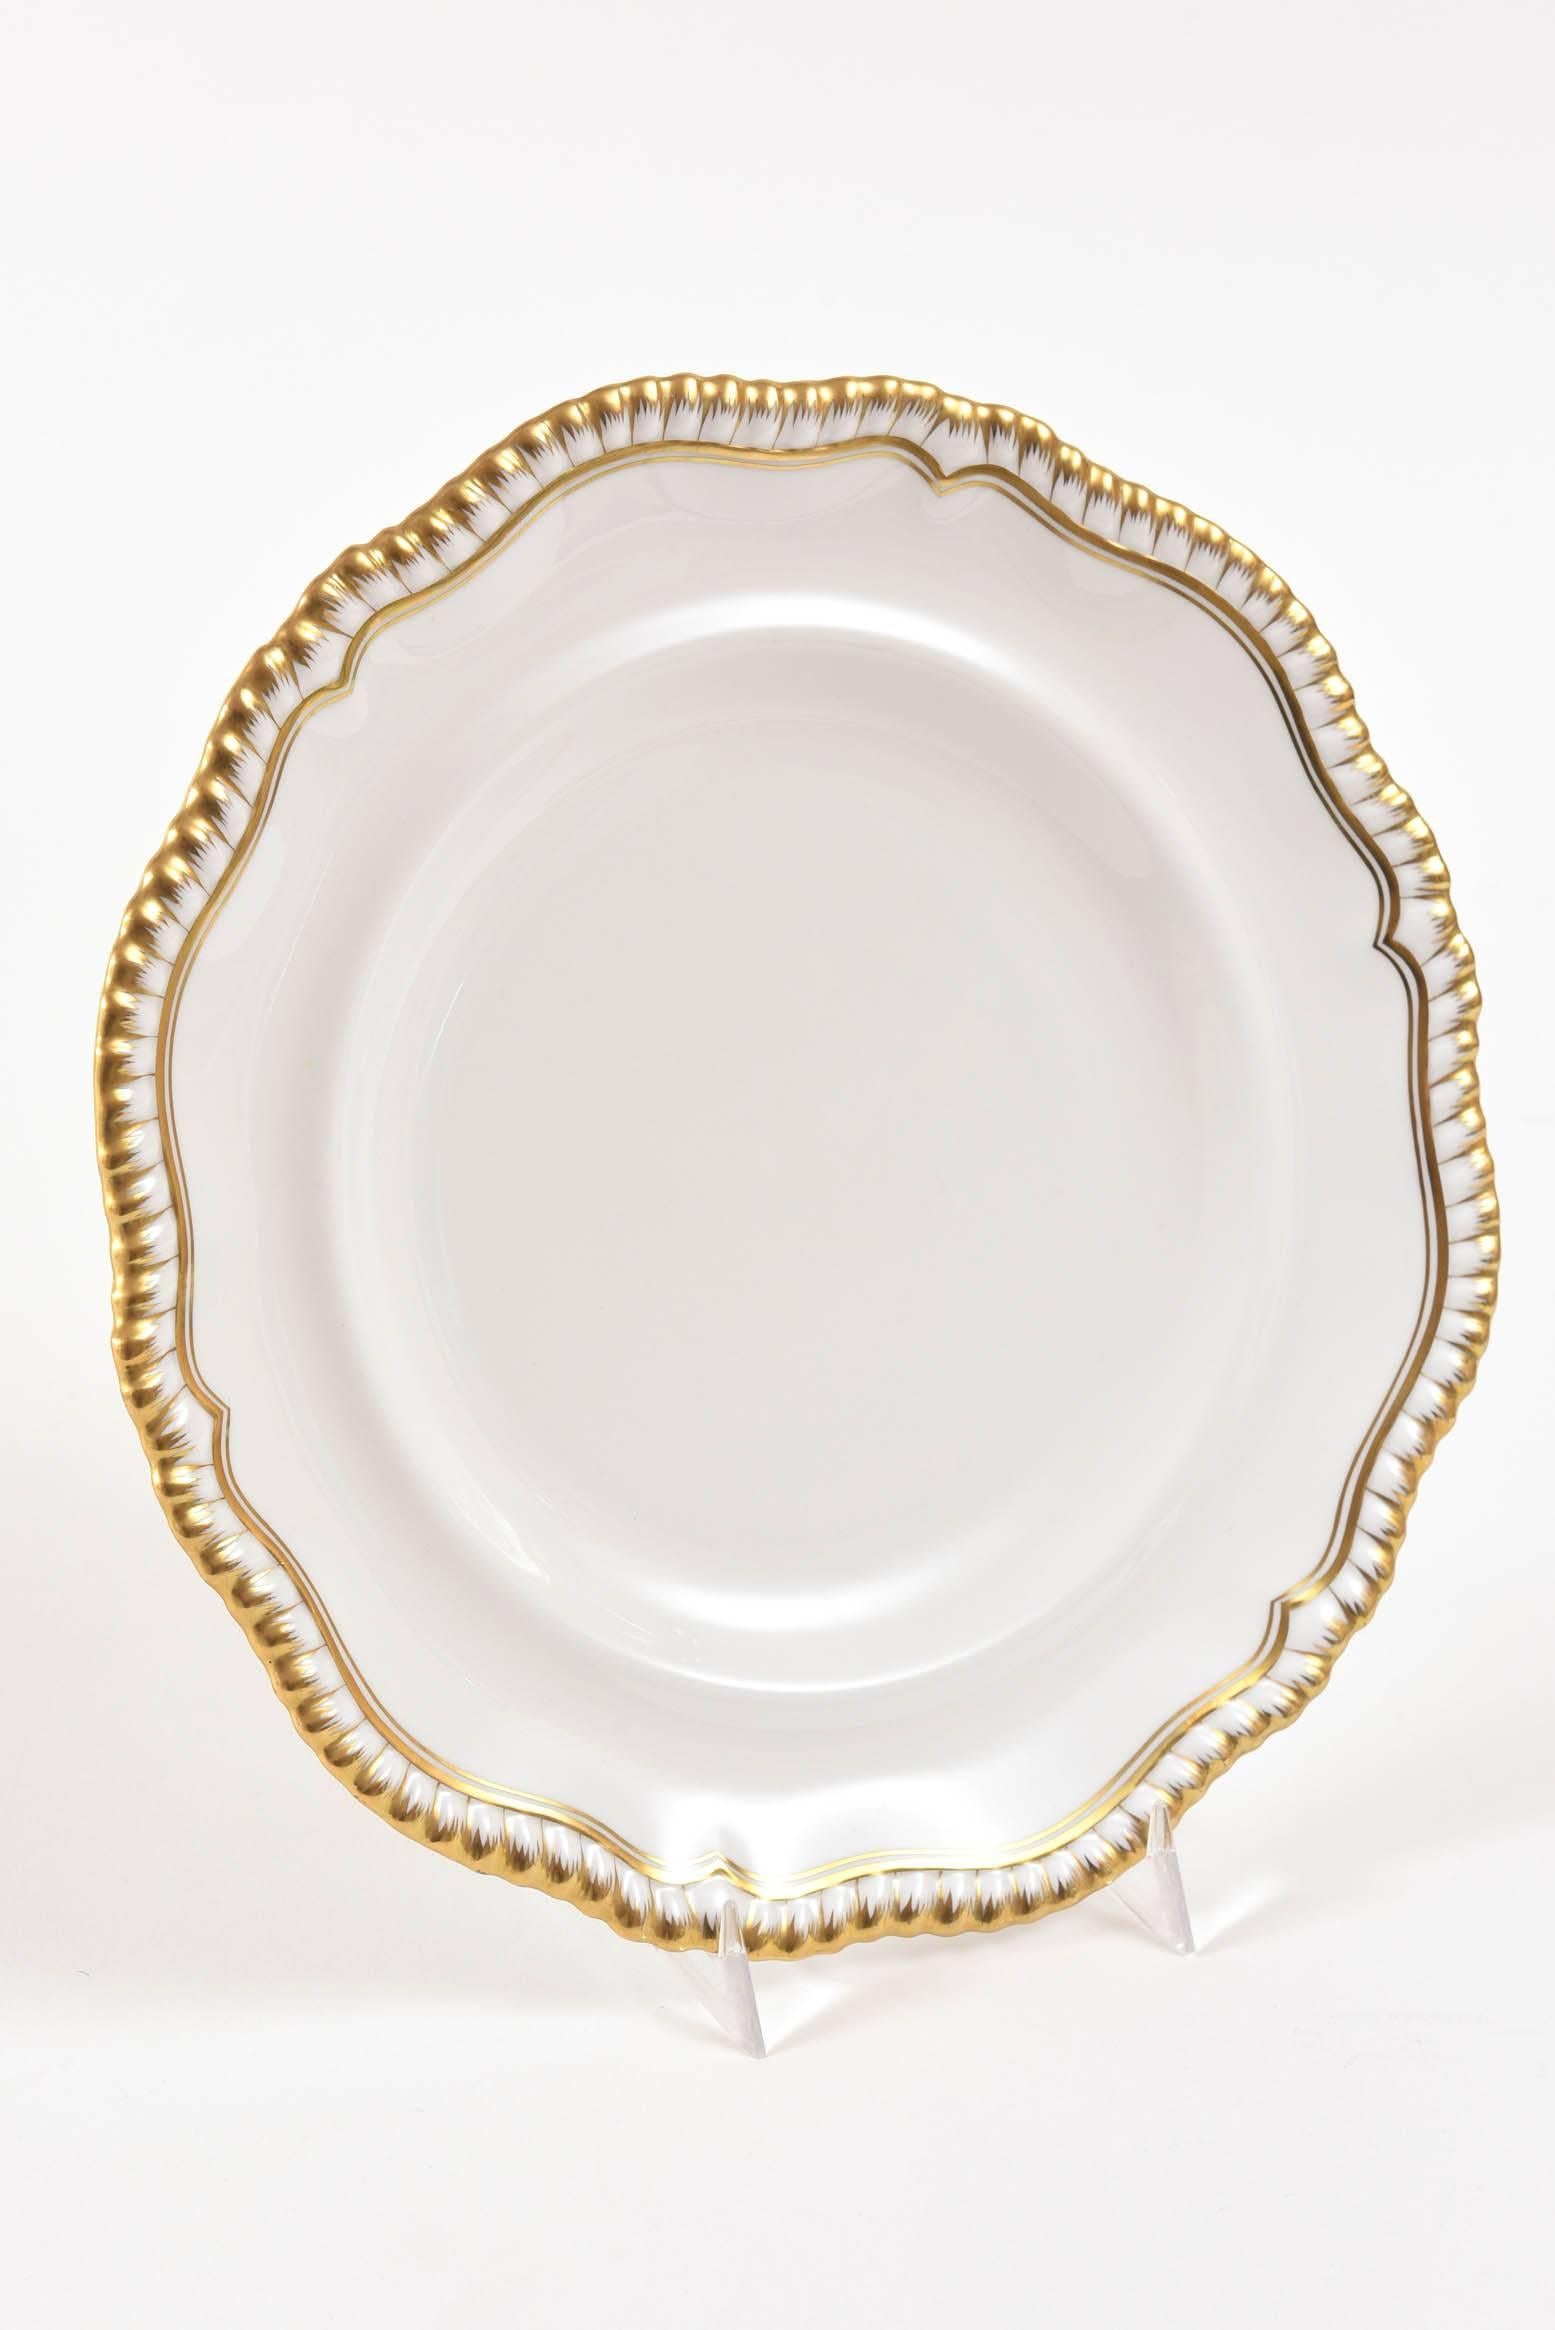 12 Elegant Antique Dinner Plates, Spode England, Gilt Scalloped Edge 1